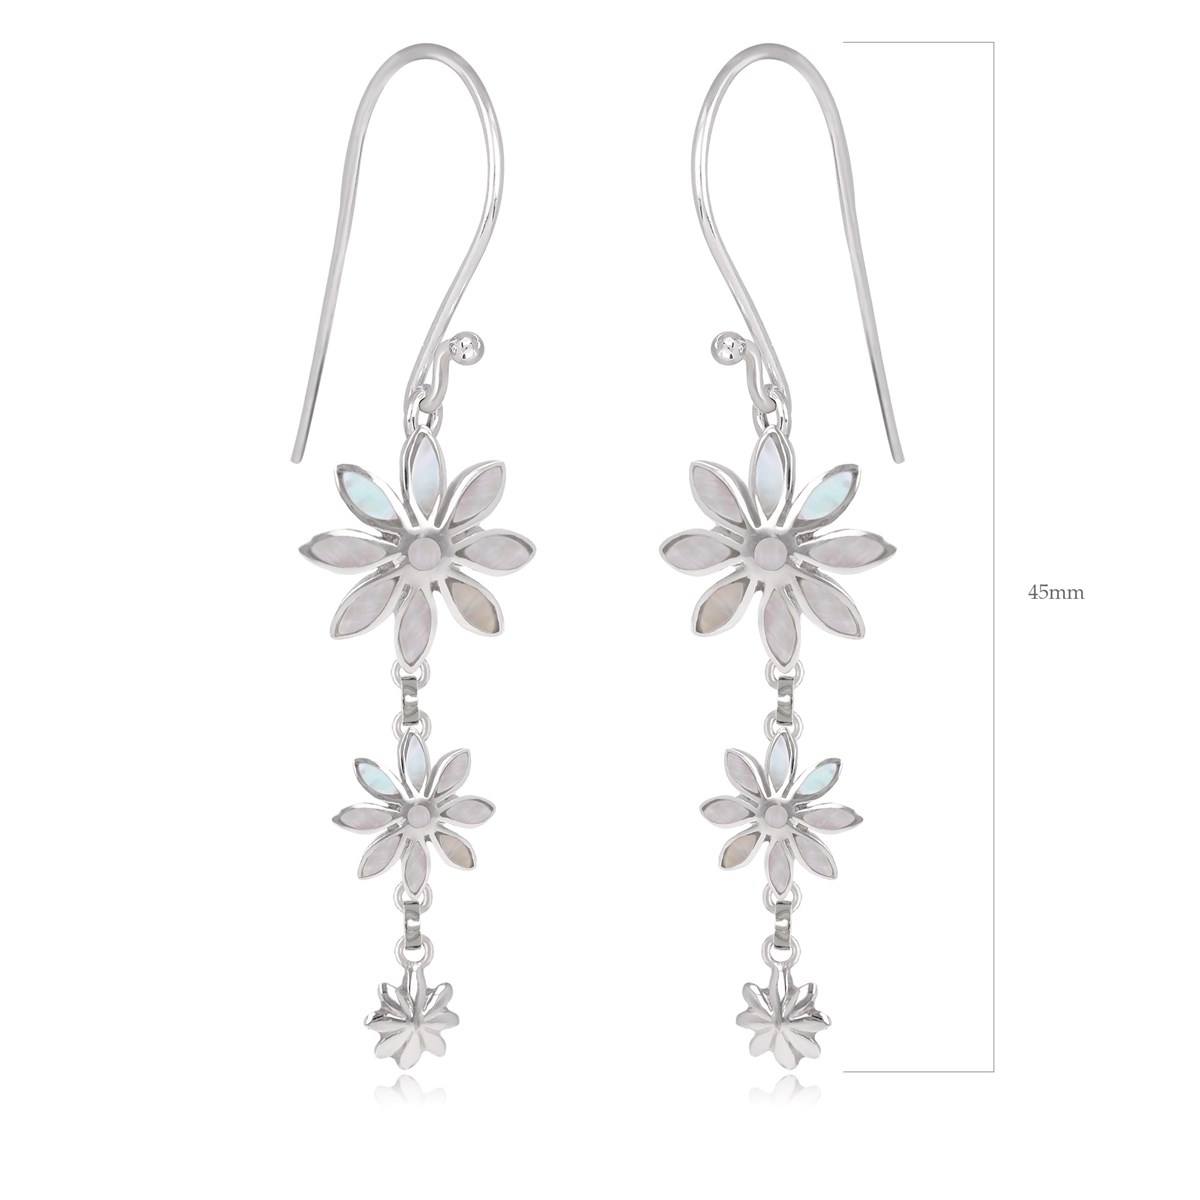 Pendants d'oreilles nacre blanche 3 fleurs en argent 925 rhodié : un bijou élégant et raffiné | Aden Boutique - vue 4